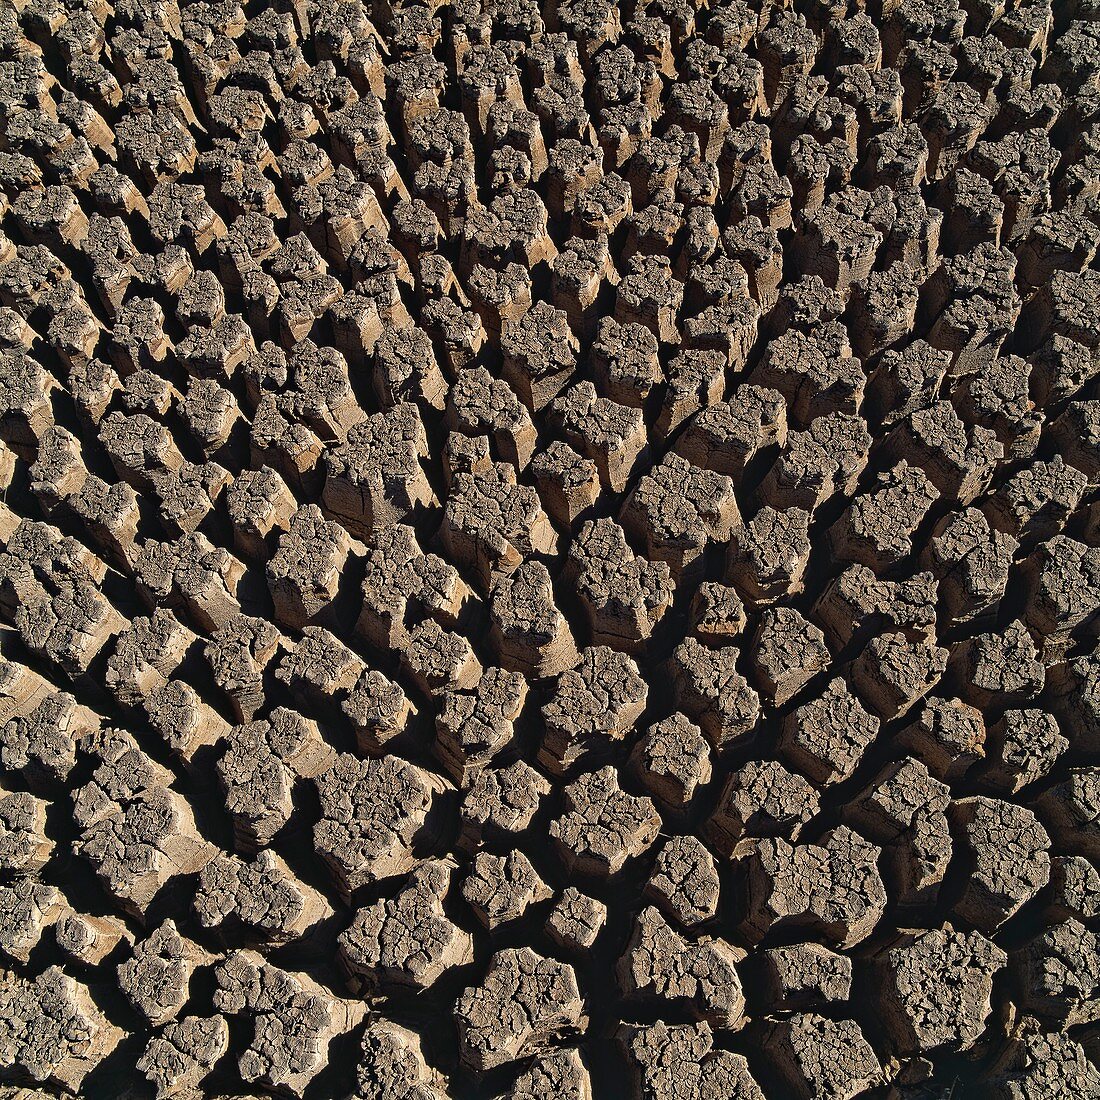 Cracked mud,Mojave Desert,USA